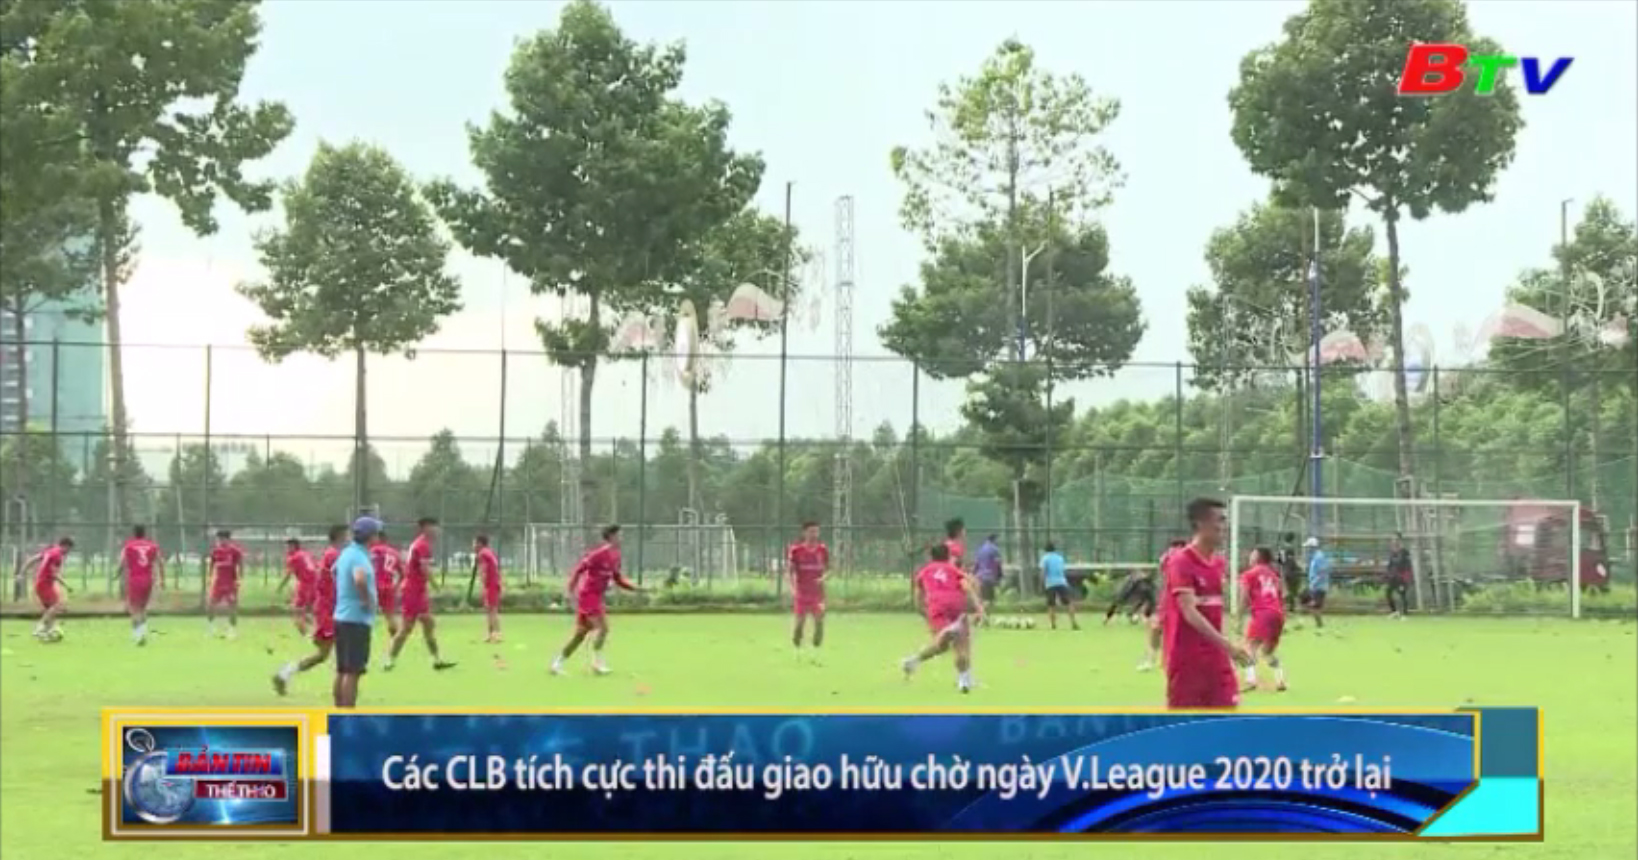 Các CLB tích cực thi đấu giao hữu chờ ngày V-League 2020 trở lại